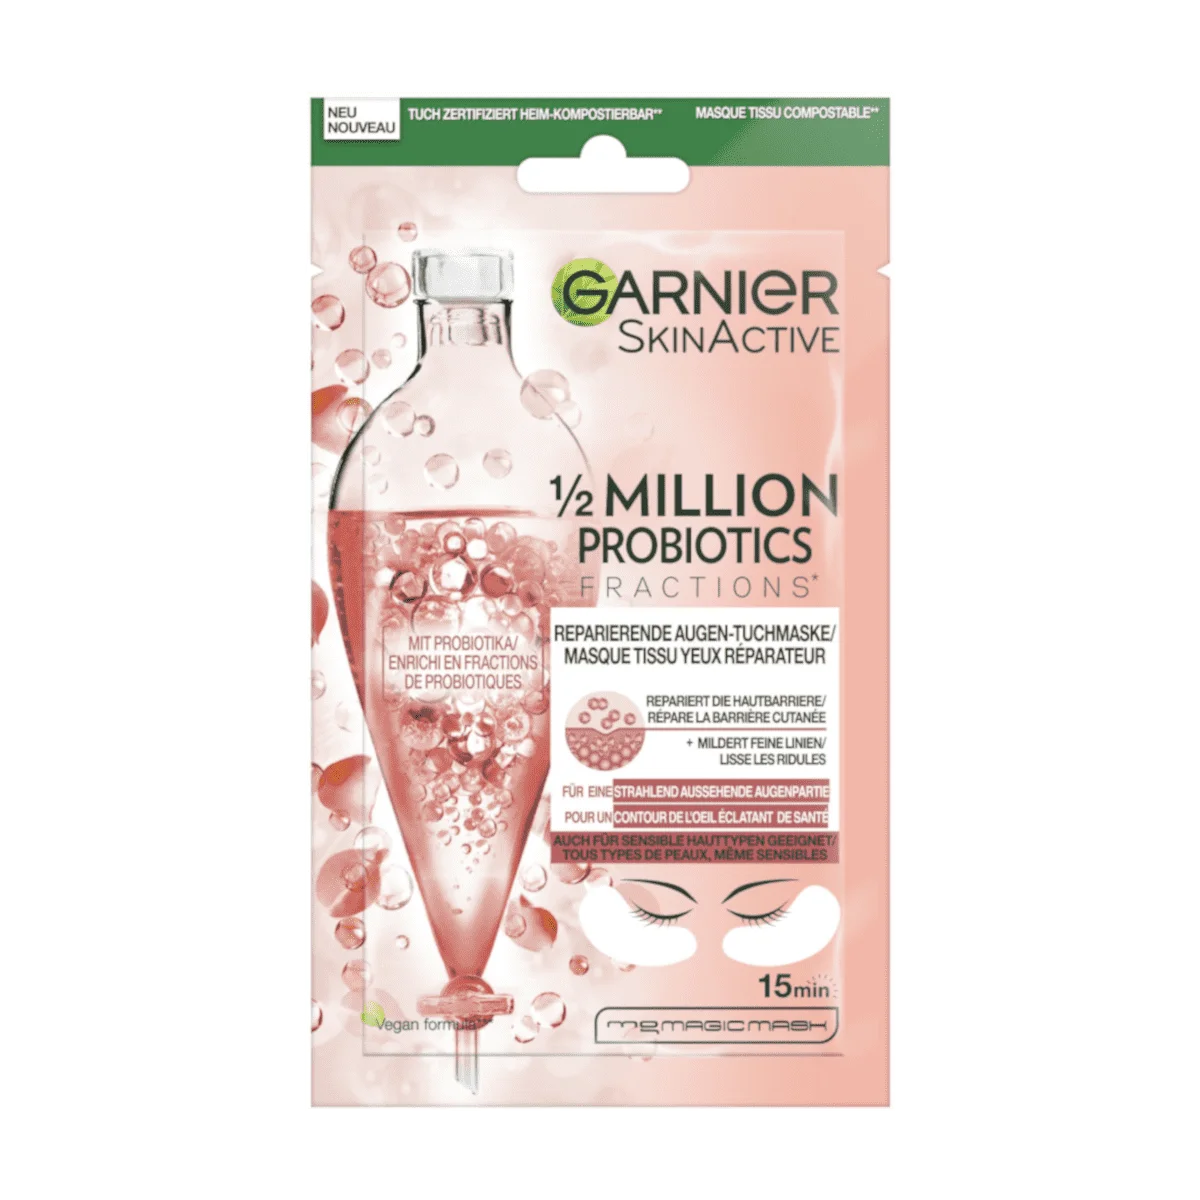 Garnier SkinActive Augentuchmaske 1/2 Million Probiotics, 1 Stk